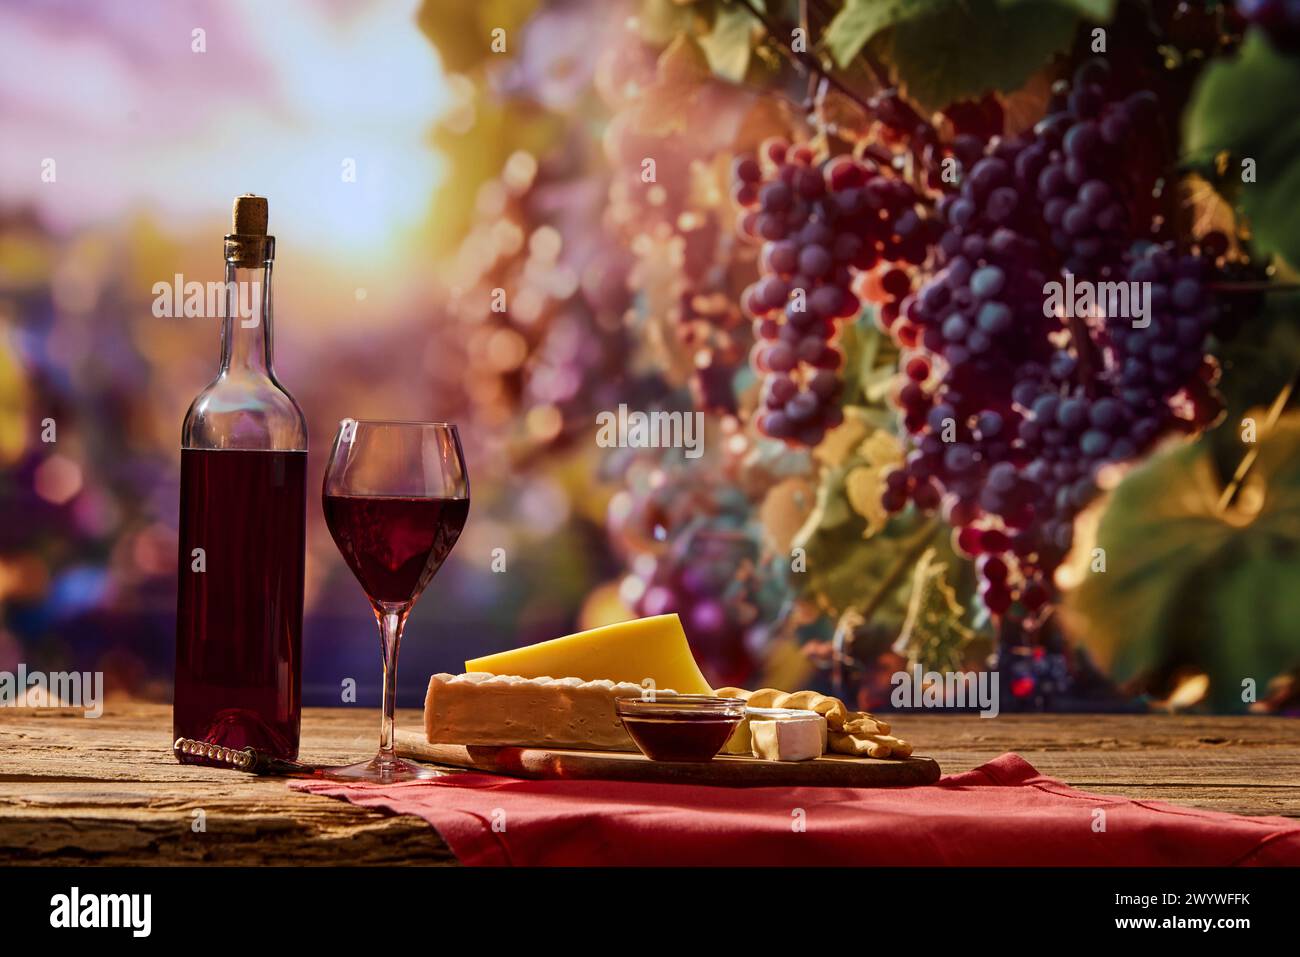 Picknickszene mit einer Flasche Wein und Glas auf dem Tisch, Käse und Cracker auf dem Teller. Weinberg mit Sonnenlicht auf dem Hintergrund Stockfoto